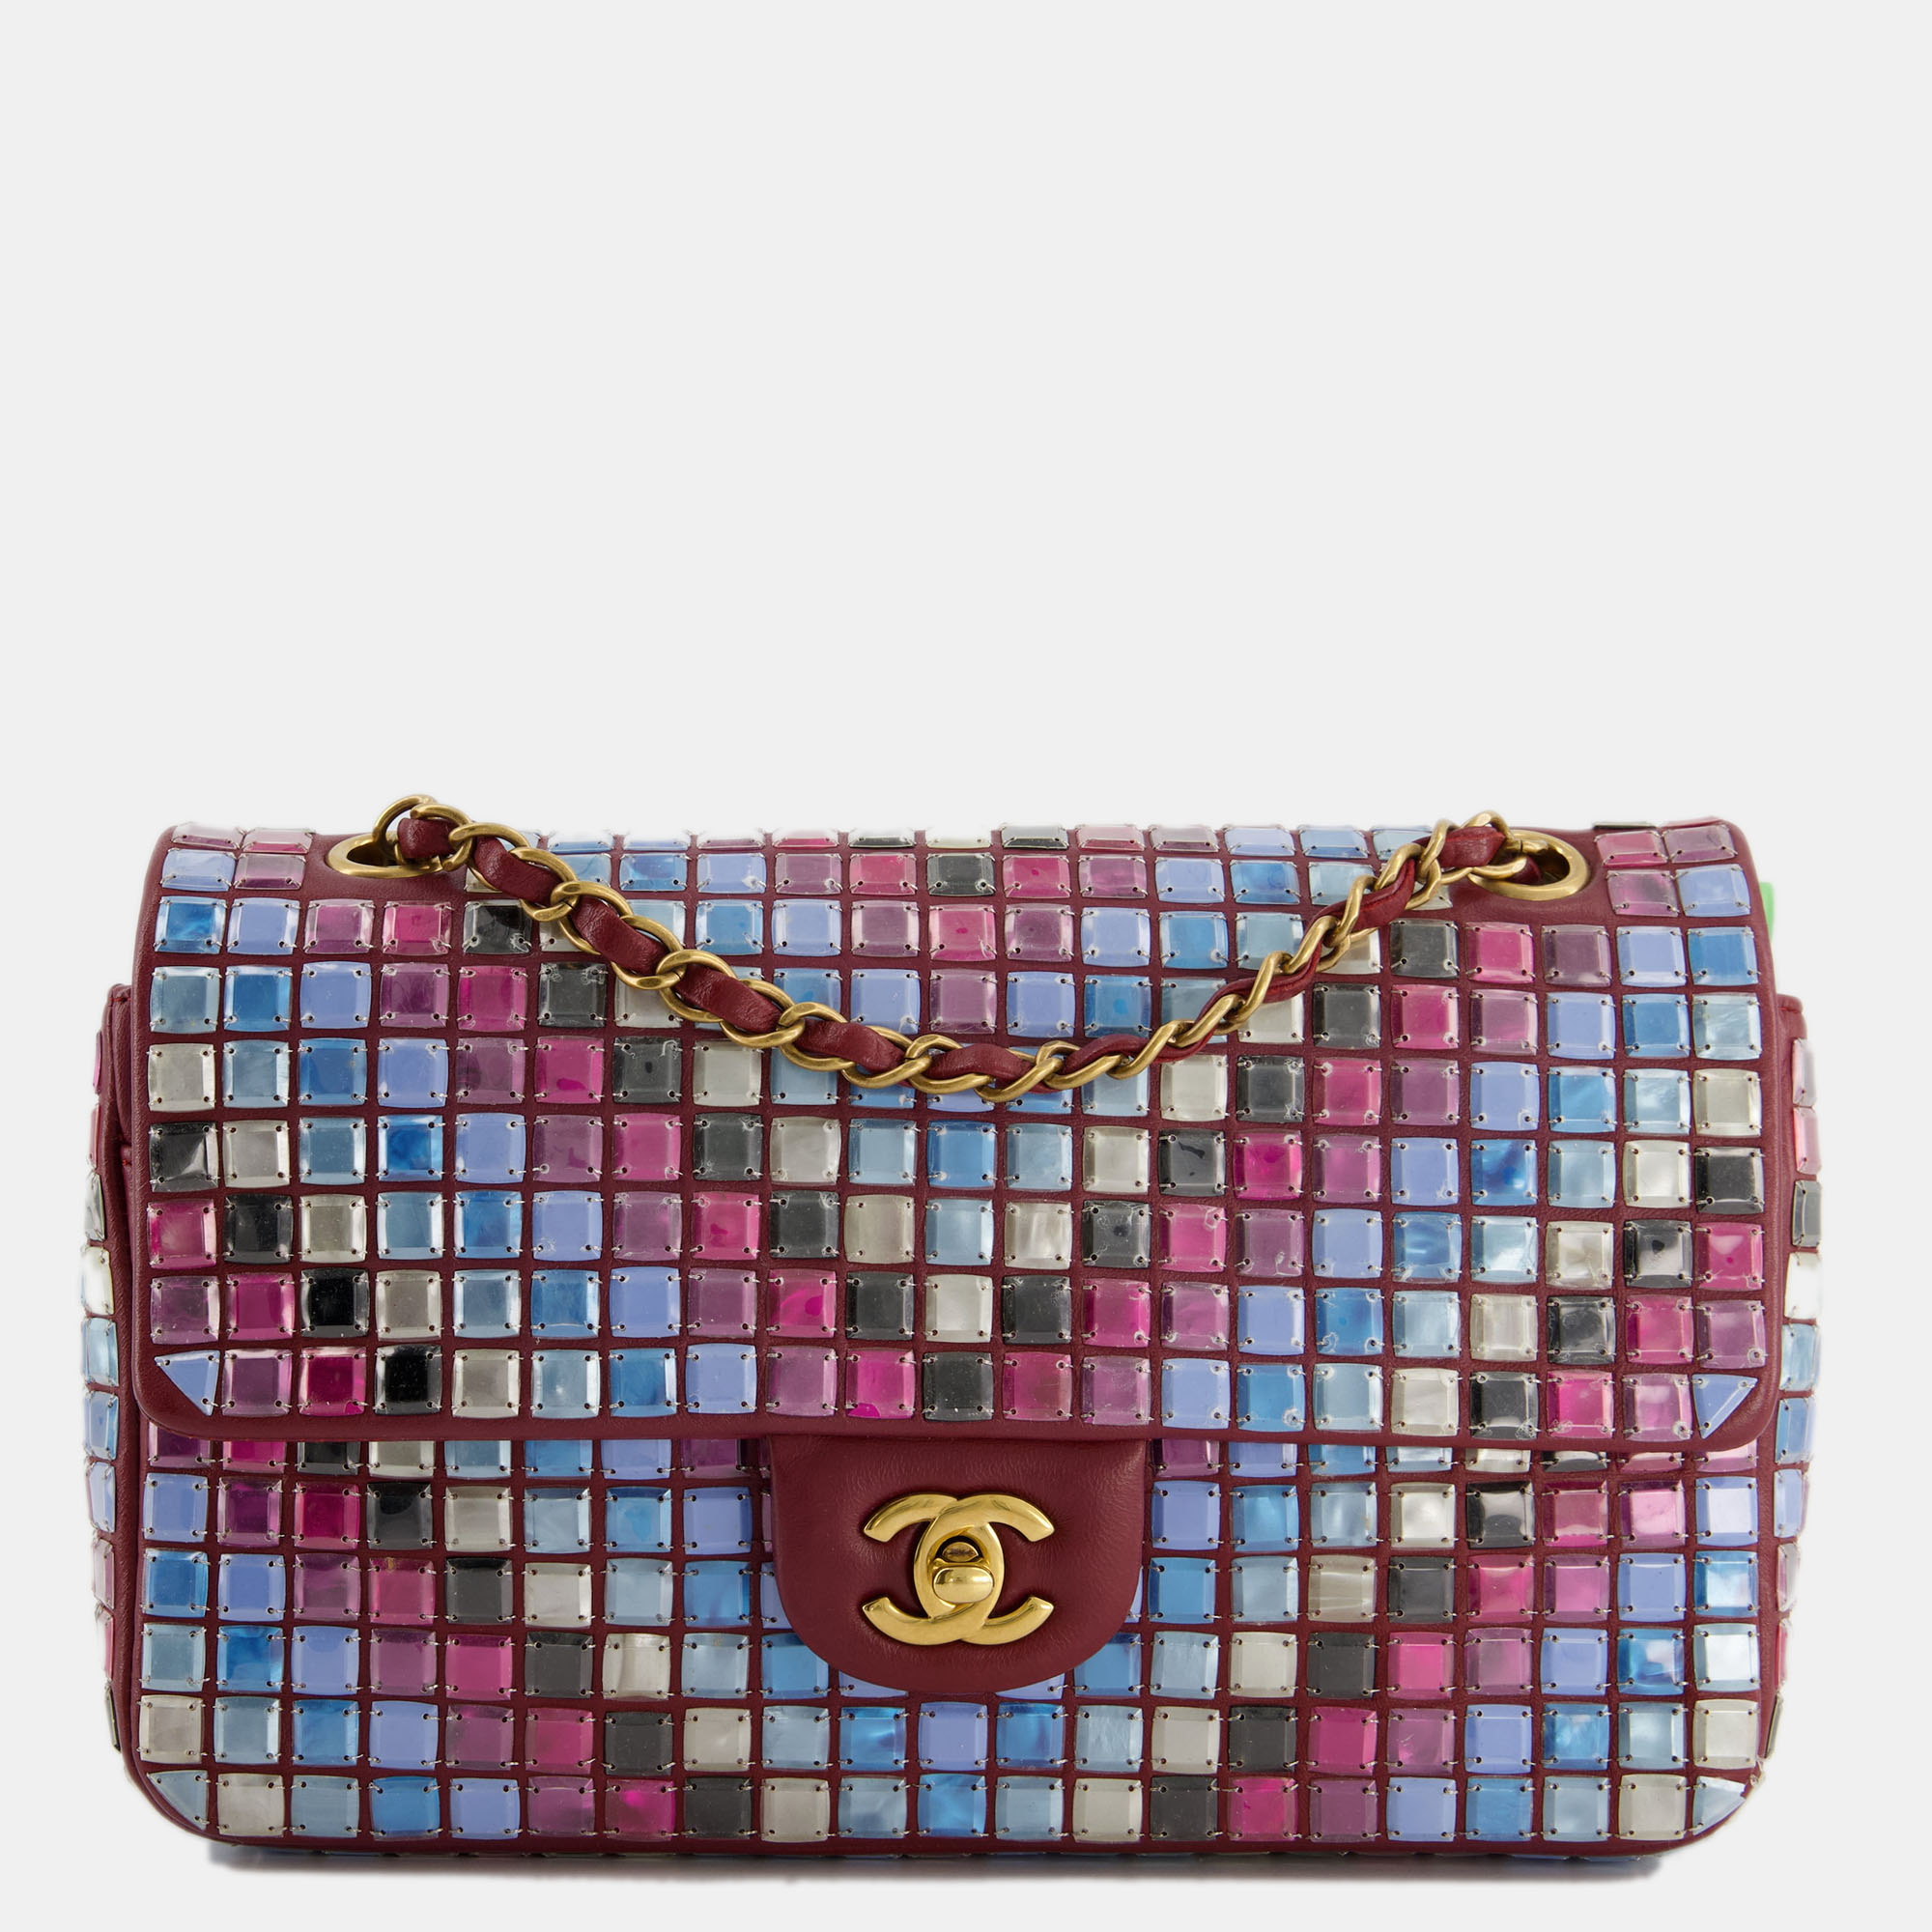 Chanel burgundy medium classic single flap bag mosaic embellished with gold hardware